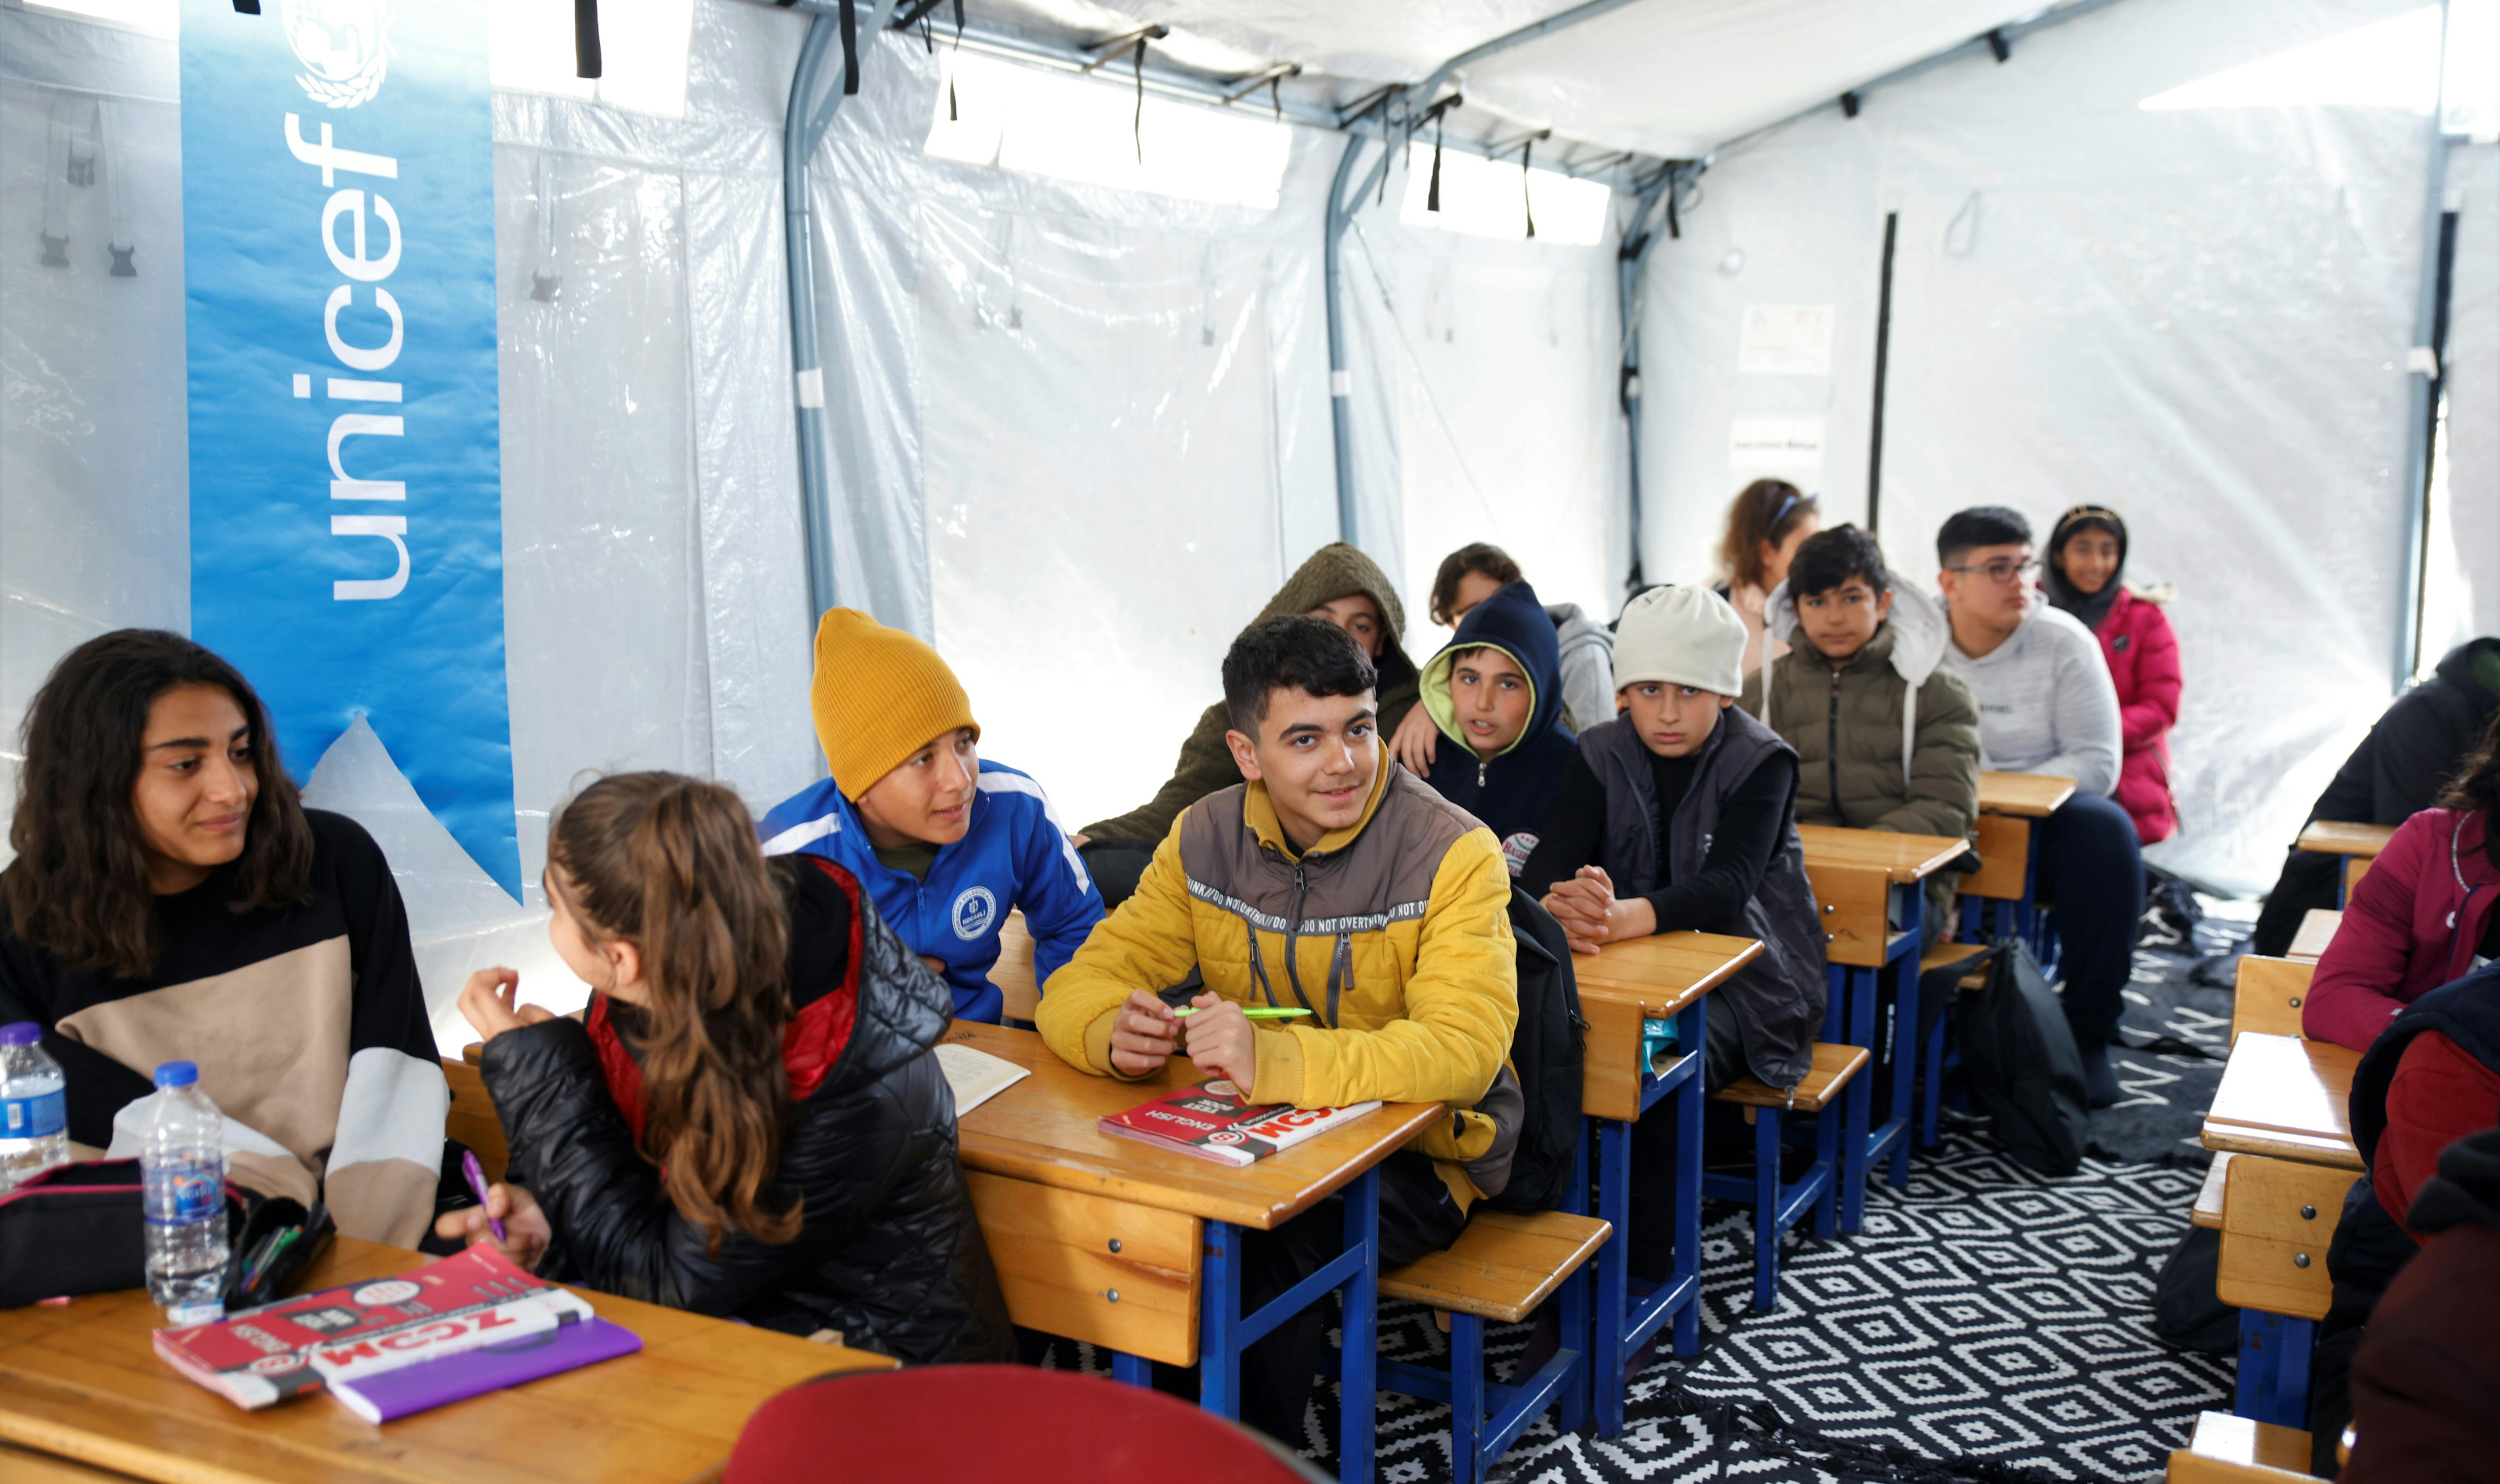 Turchia - Bambini che frequentano le lezioni in un'aula tenda sostenuta dall'UNICEF in un rifugio temporaneo ad Antakya